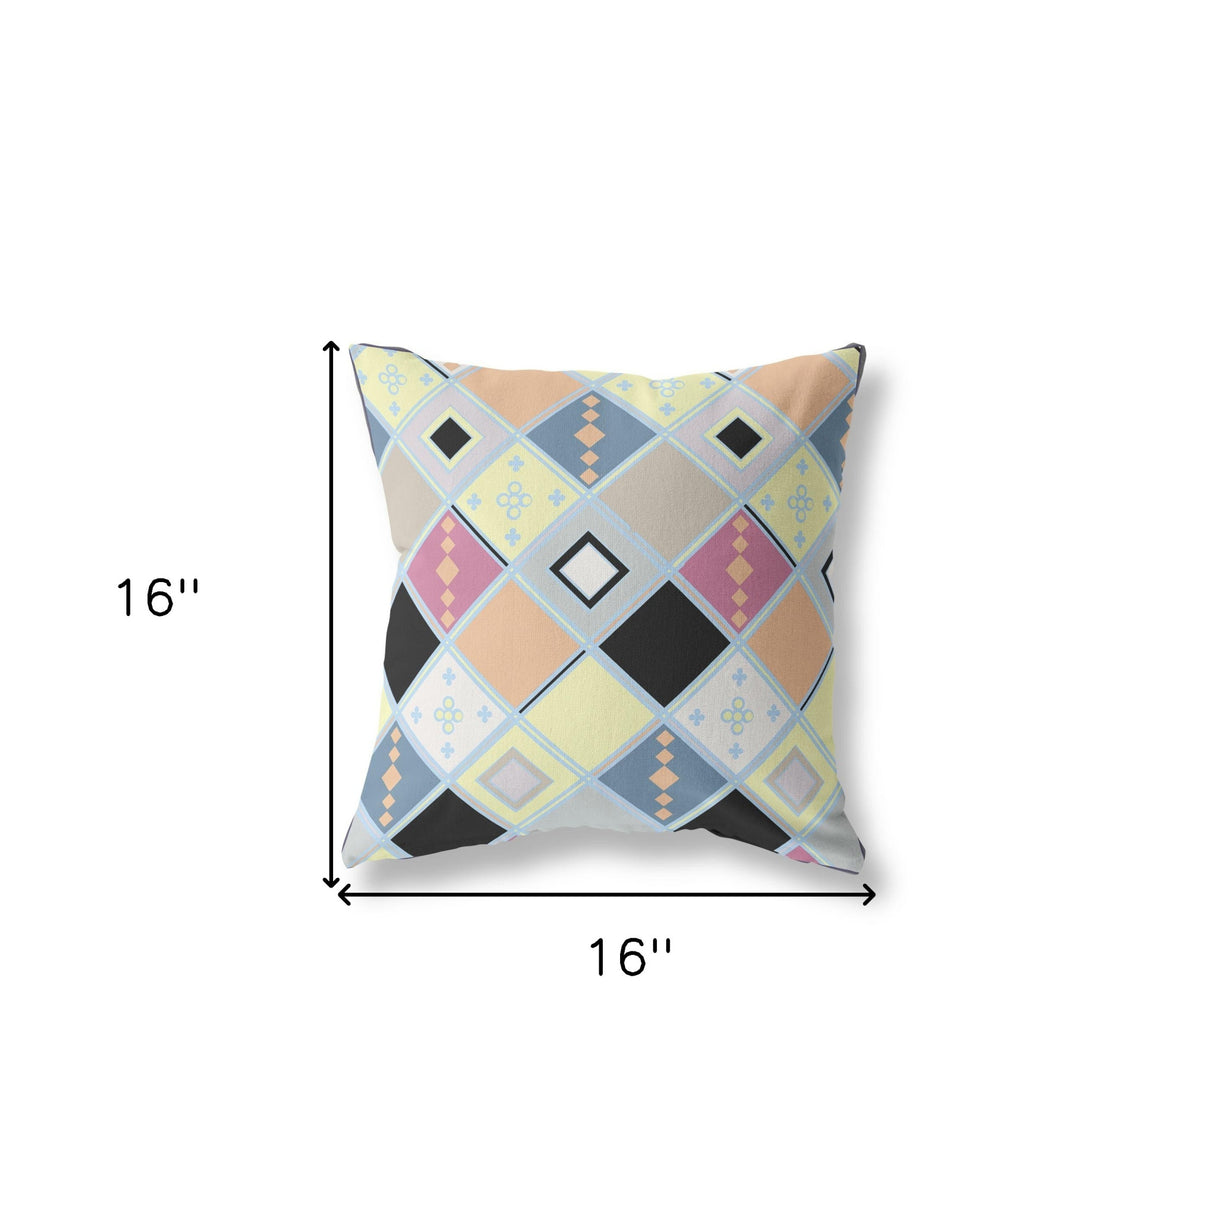 16” Yellow Pink Tile Indoor Outdoor Zippered Throw Pillow